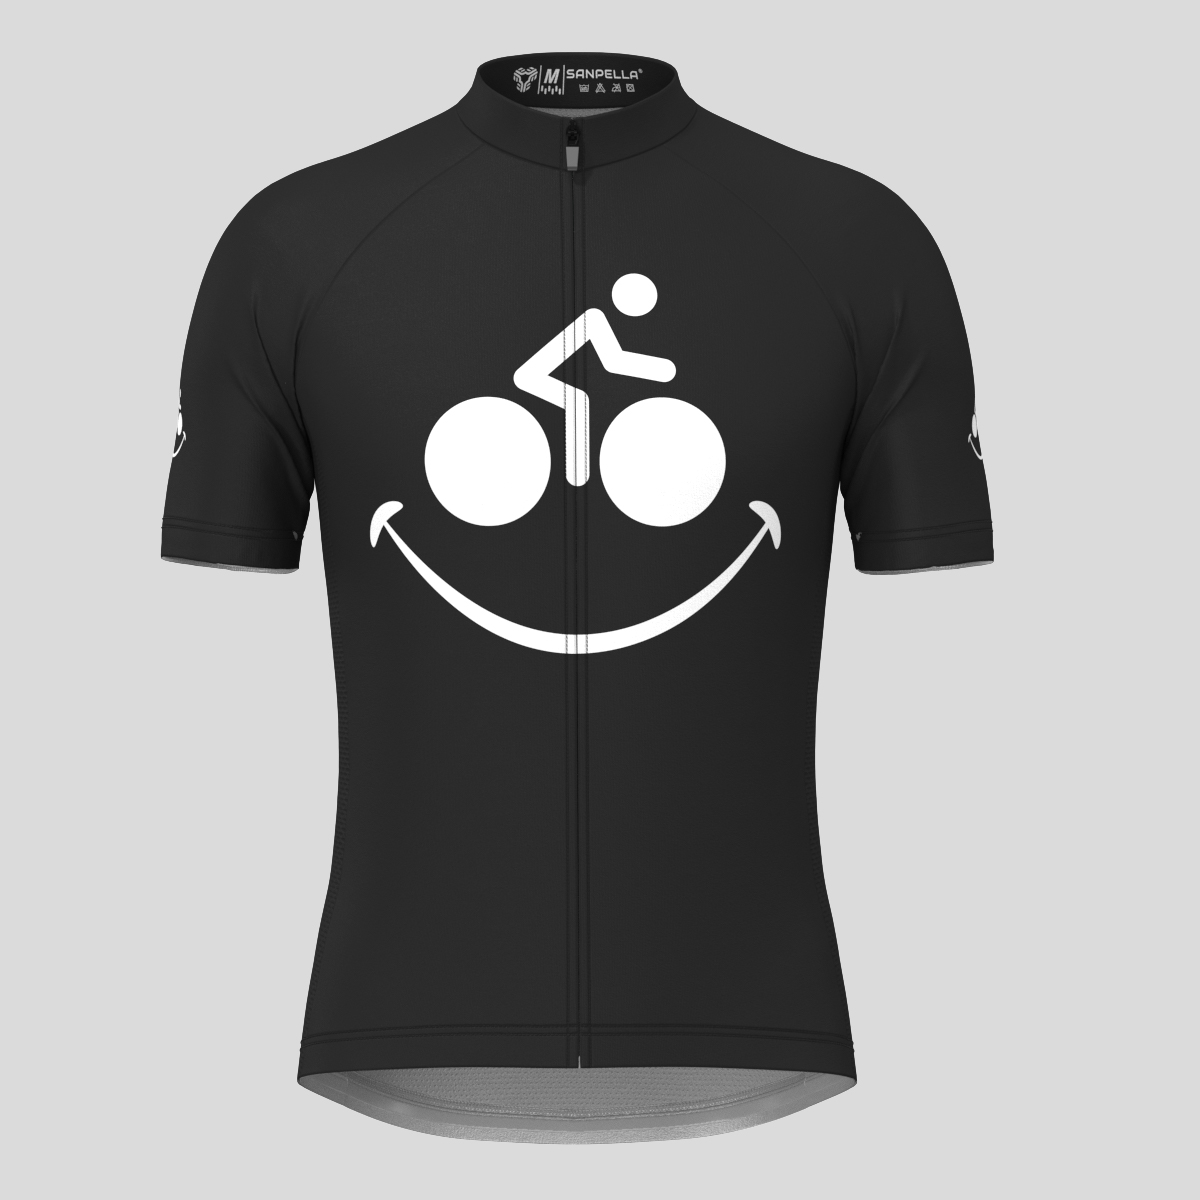 Bike Smile Men's Cycling Jersey - Black